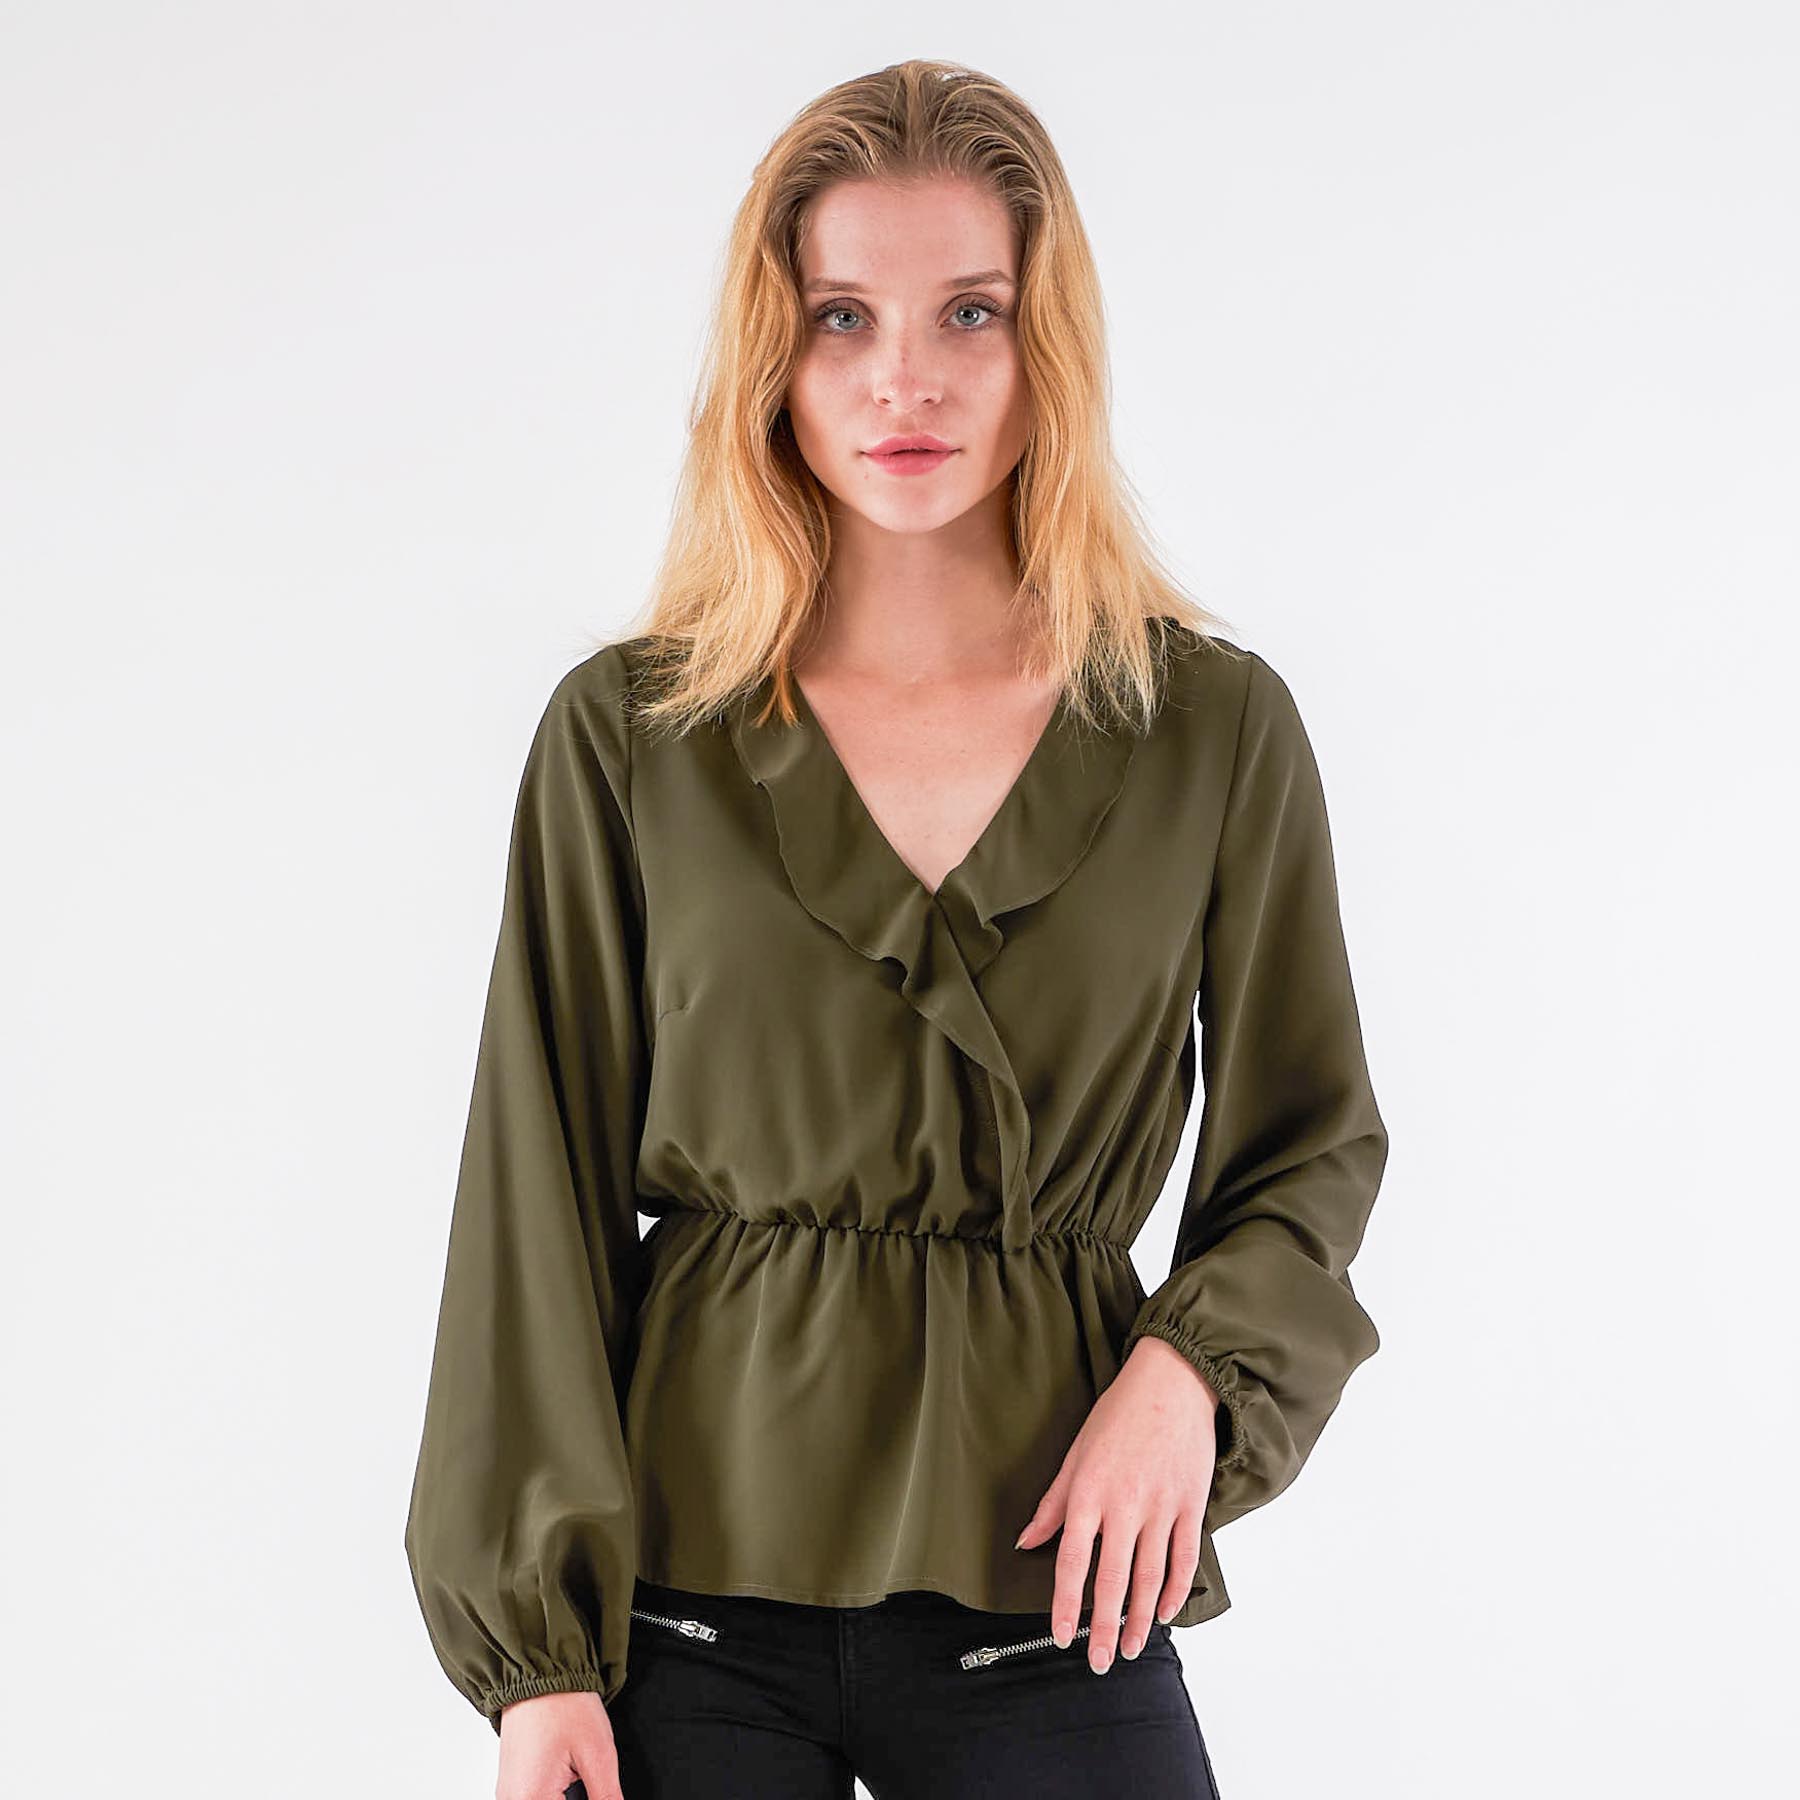 Pure friday - Purebby-ls-1 - Bluser og skjorter til kvinder - Grøn - XL